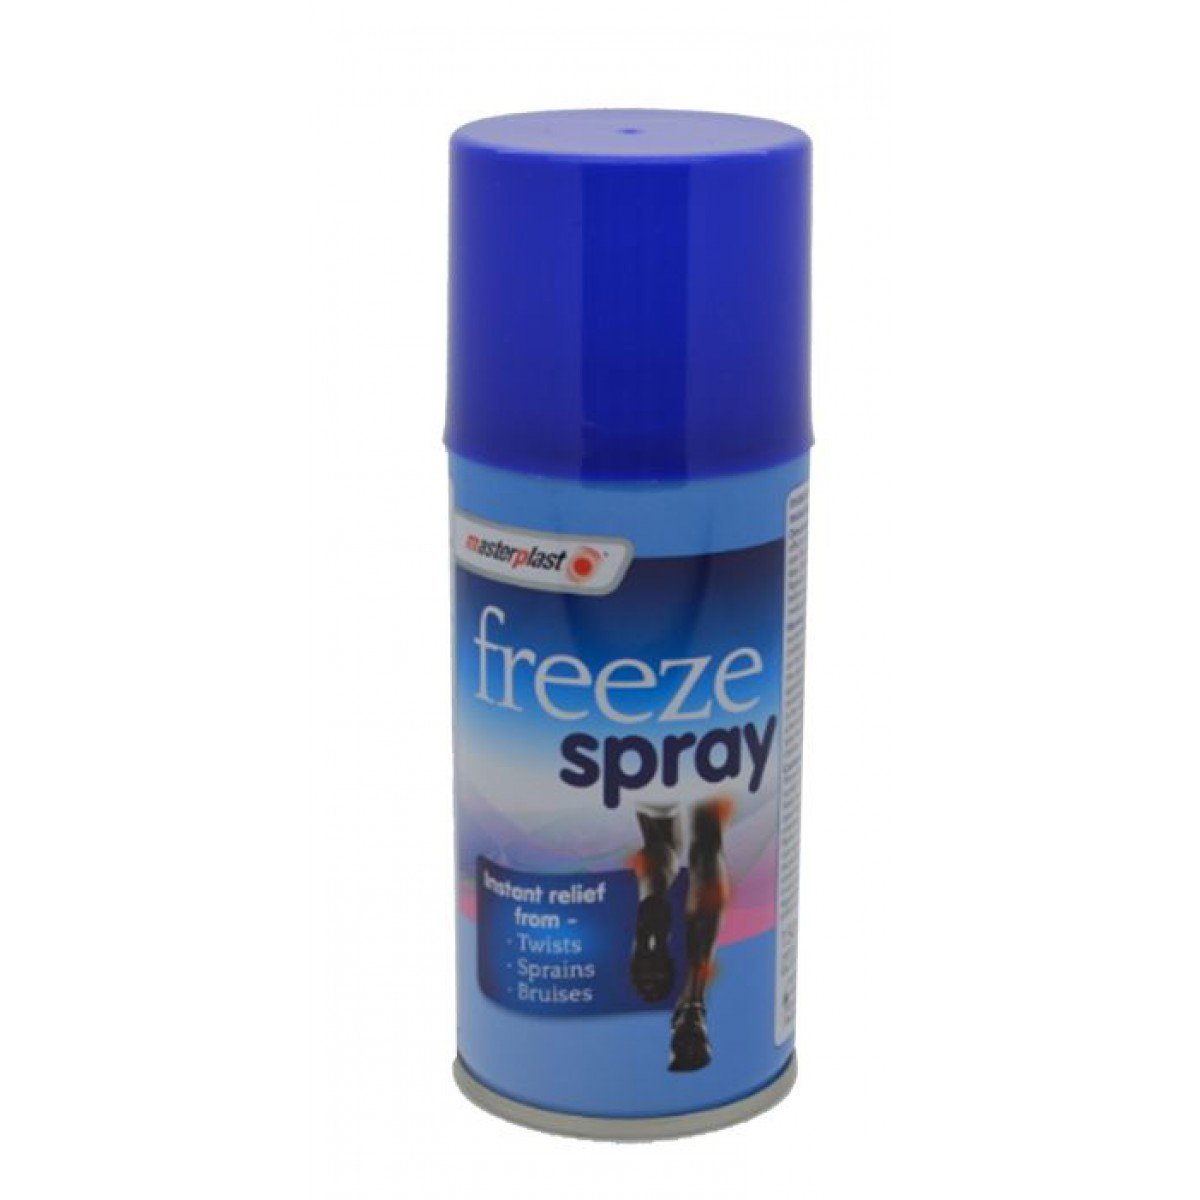 Cooling Massage Spray